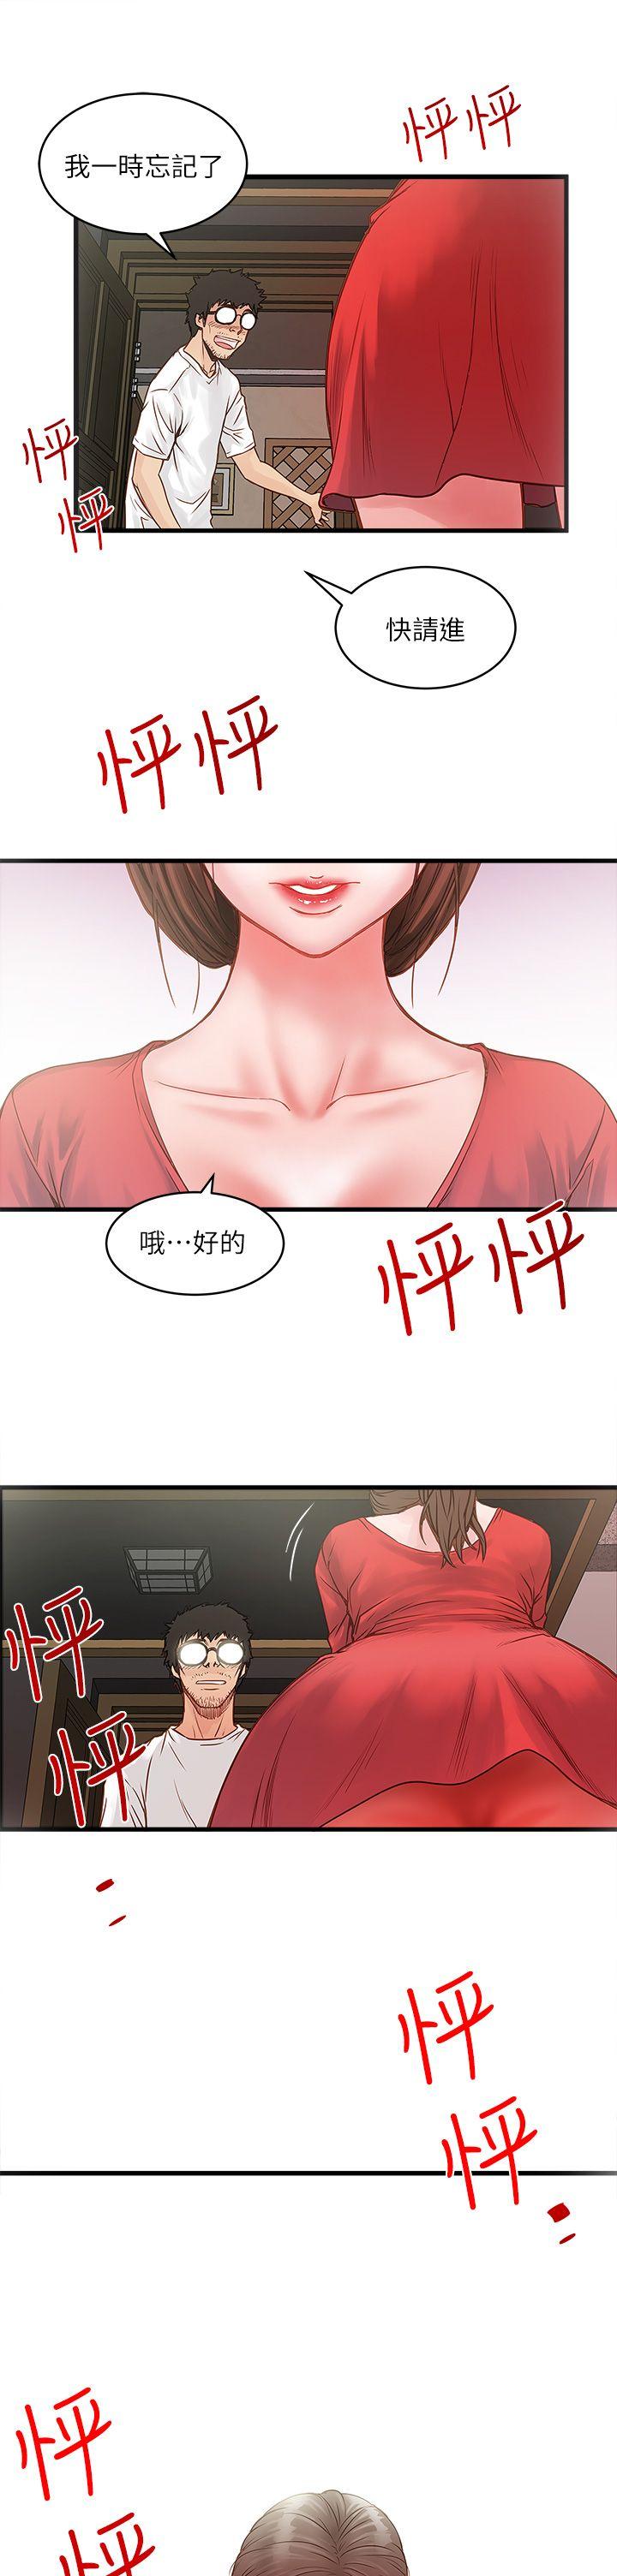 韩国污漫画 下女,初希 第1话-废物老公 63